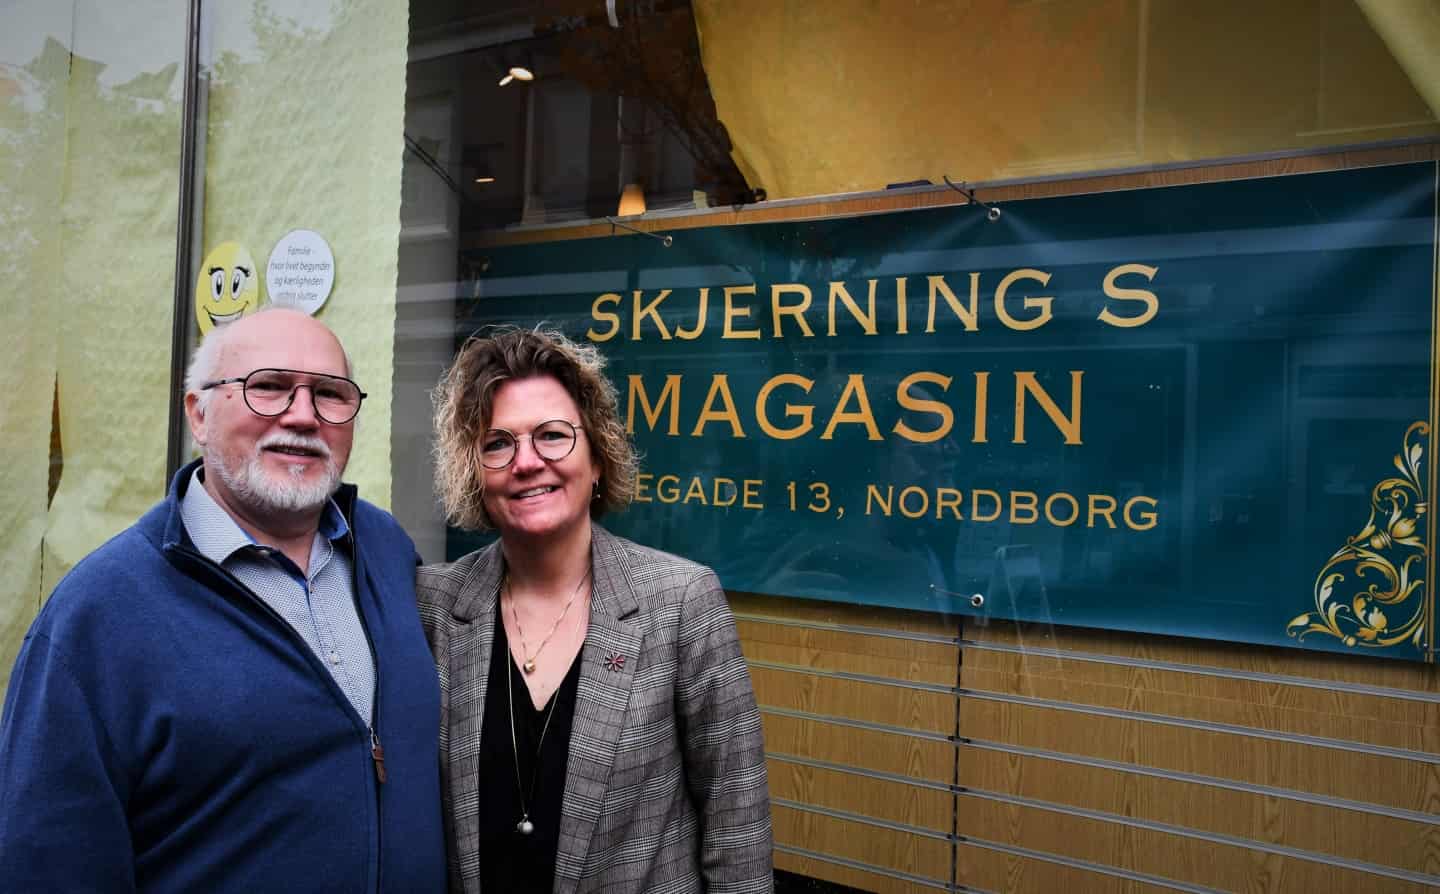 Husker du Skjerns Magasin Matador: Nordborg får en snert af Korsbæk ugeavisen.dk